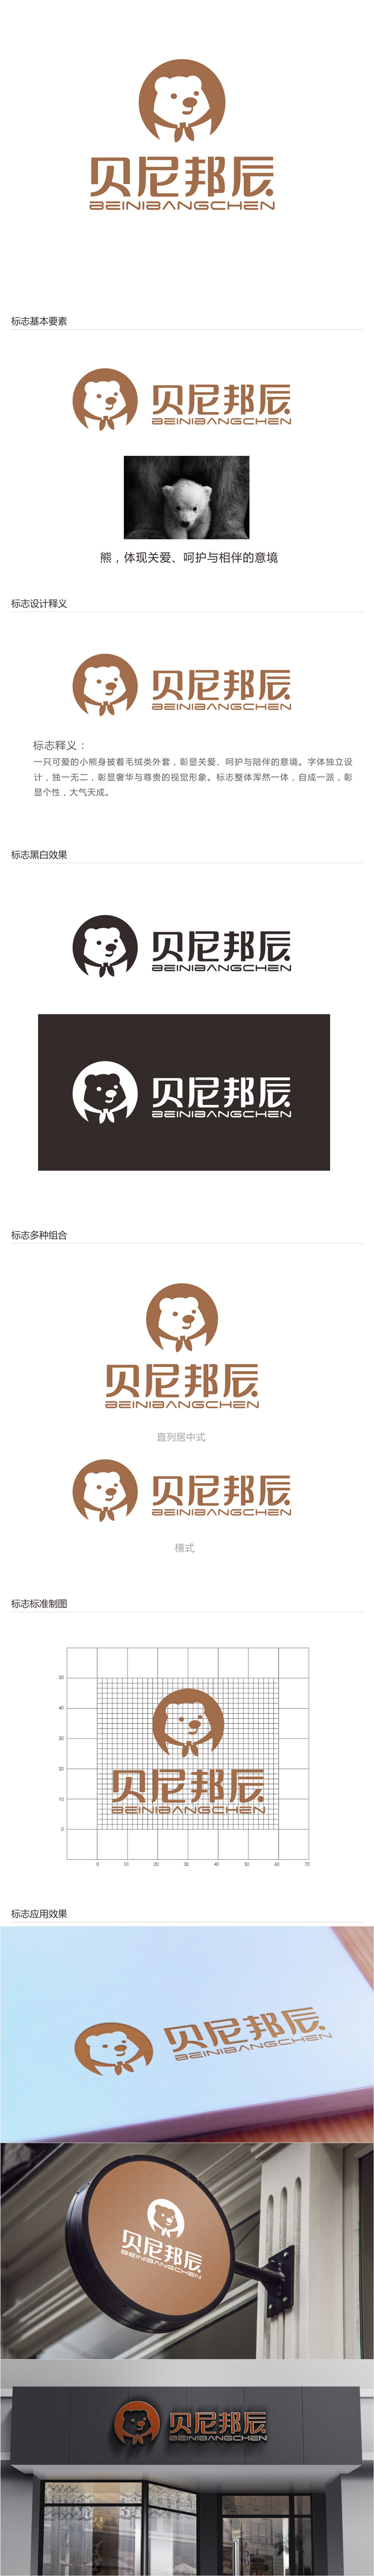 唐国强的贝尼邦辰logo设计